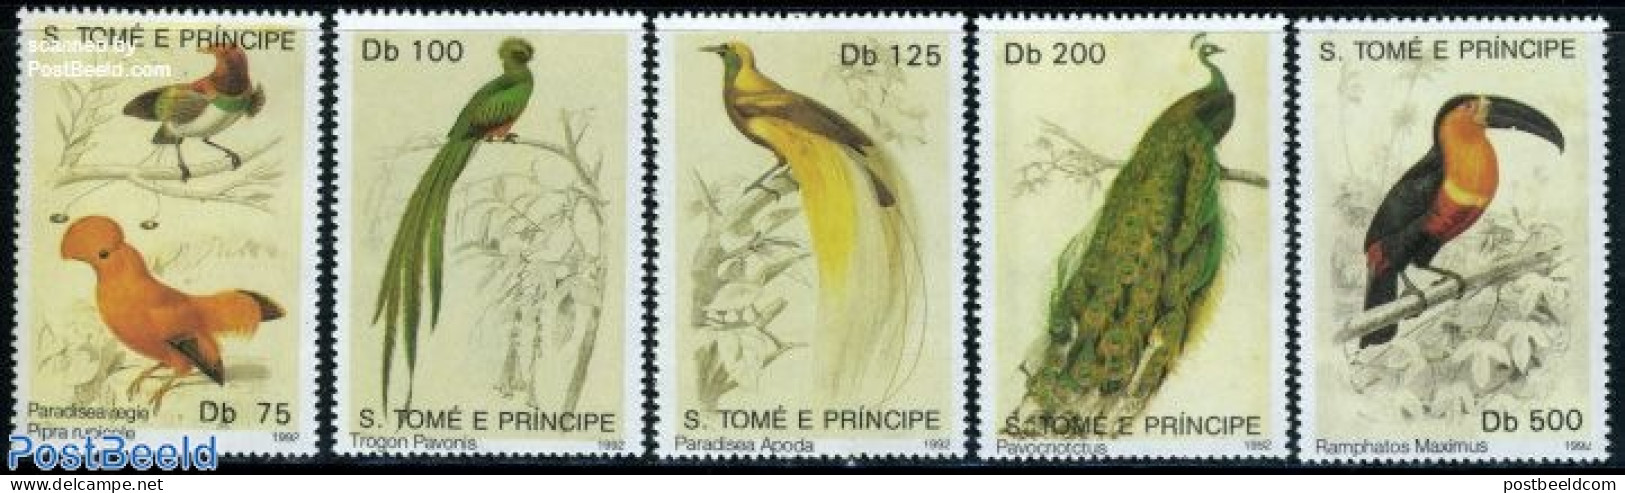 Sao Tome/Principe 1992 Birds 5v, Mint NH, Nature - Birds - Sao Tome Et Principe